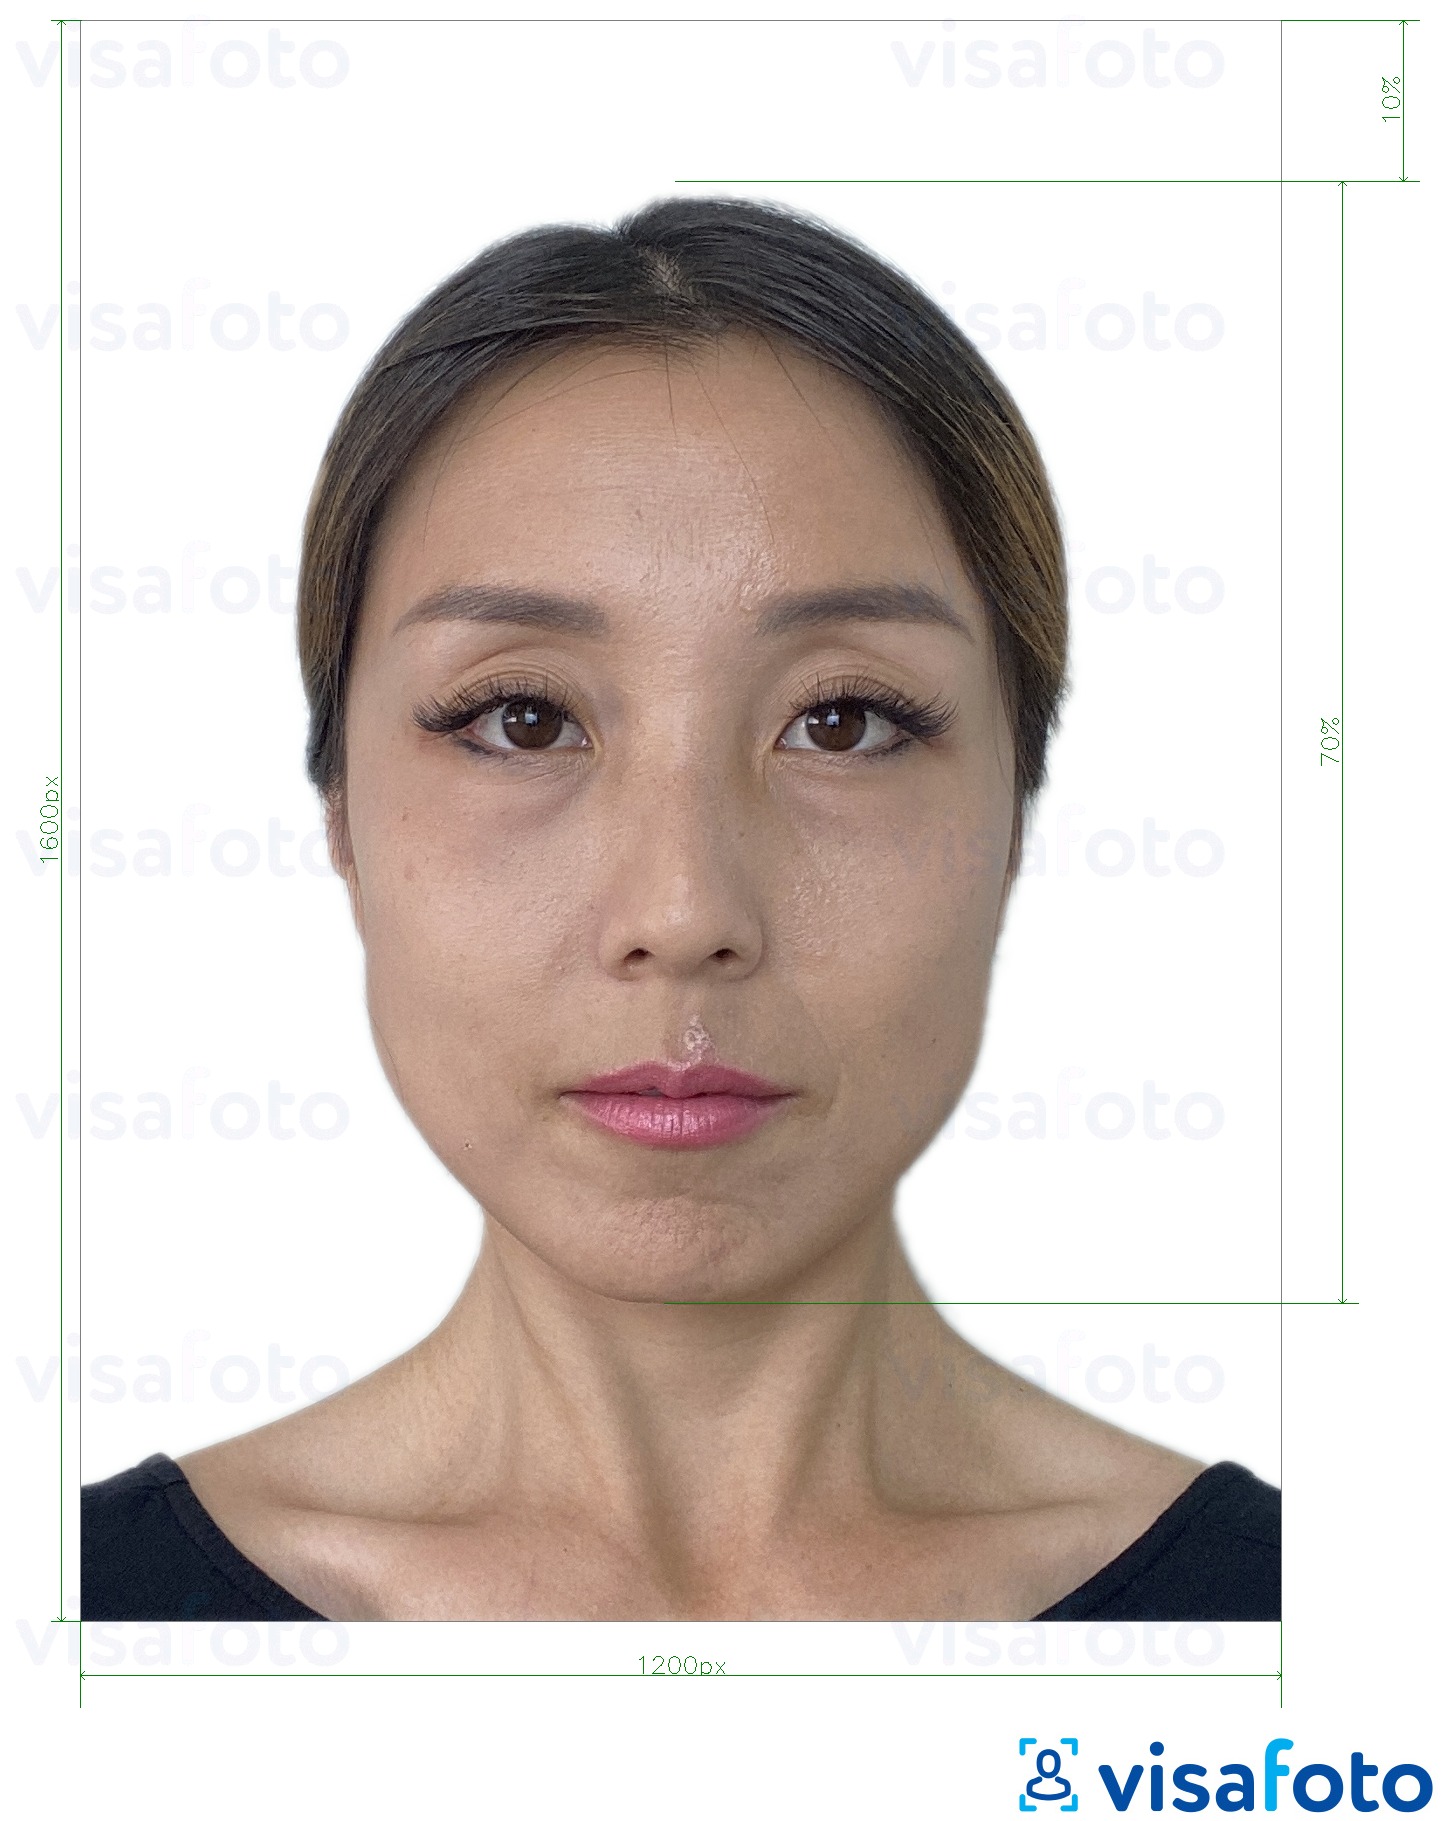  کی تصویر کی مثال ہانگ کانگ آن لائن ای پاسپورٹ 1200x1600 پکسلز سائز کی تفصیلات كے مطابق بنائی گئی ،  